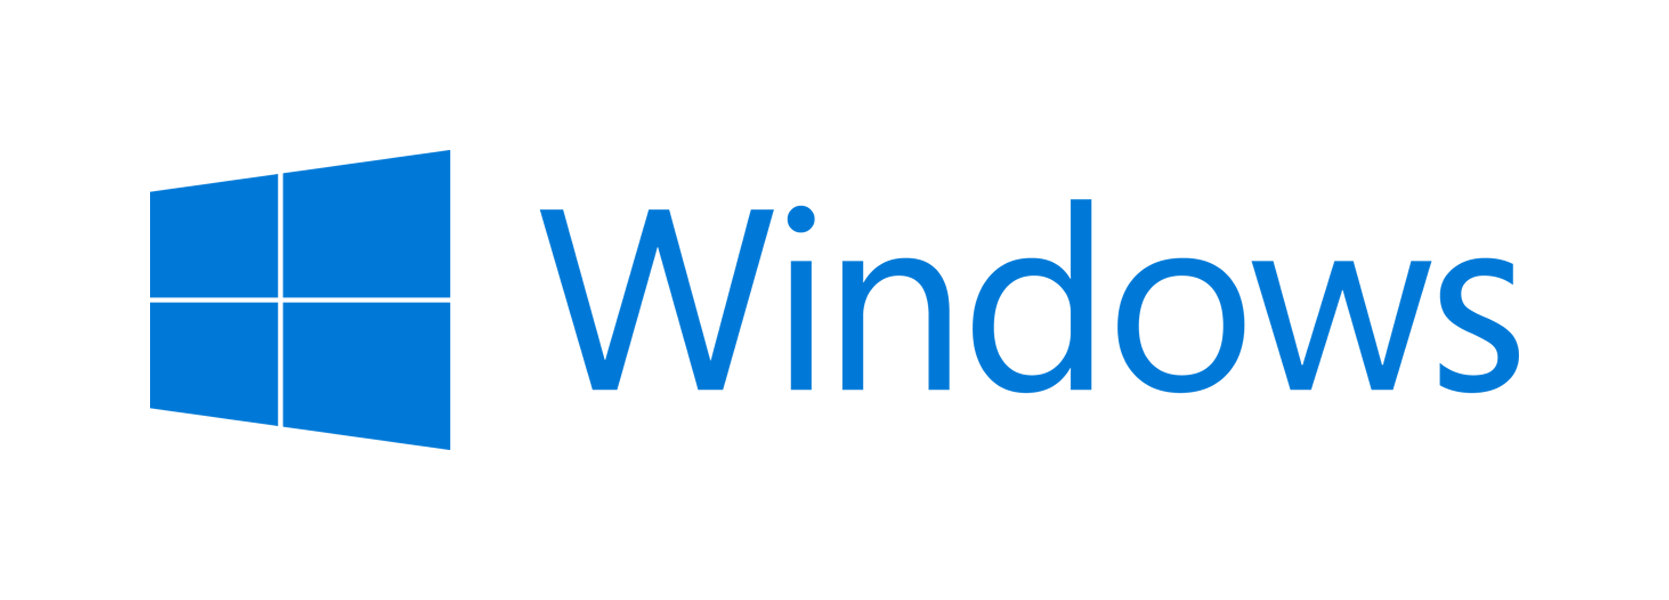 Software - Windows 8.1 , HD Wallpaper & Backgrounds